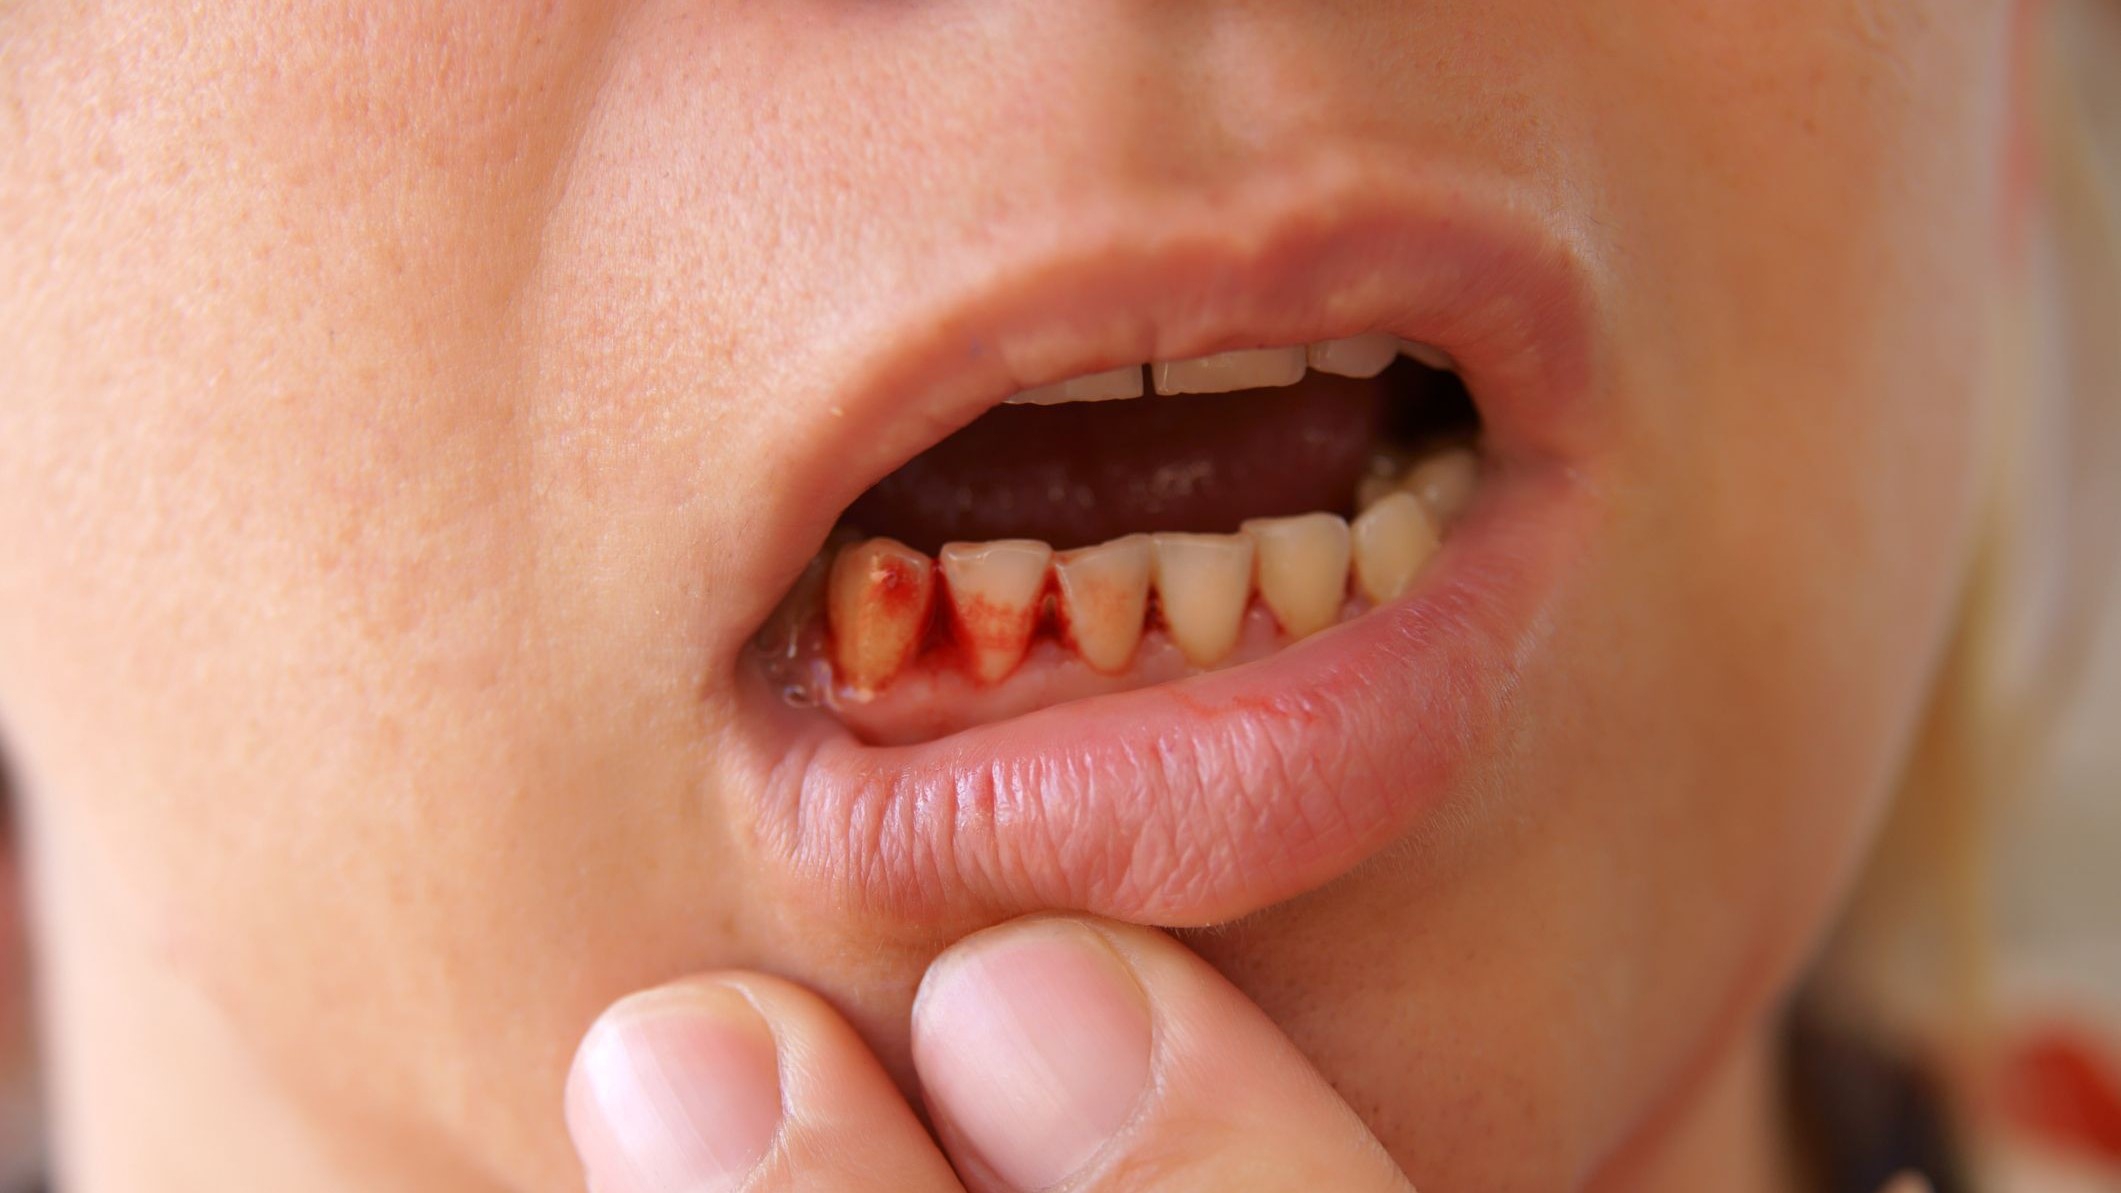  Chảy máu răng không cầm được : Nguyên nhân và cách điều trị hiệu quả